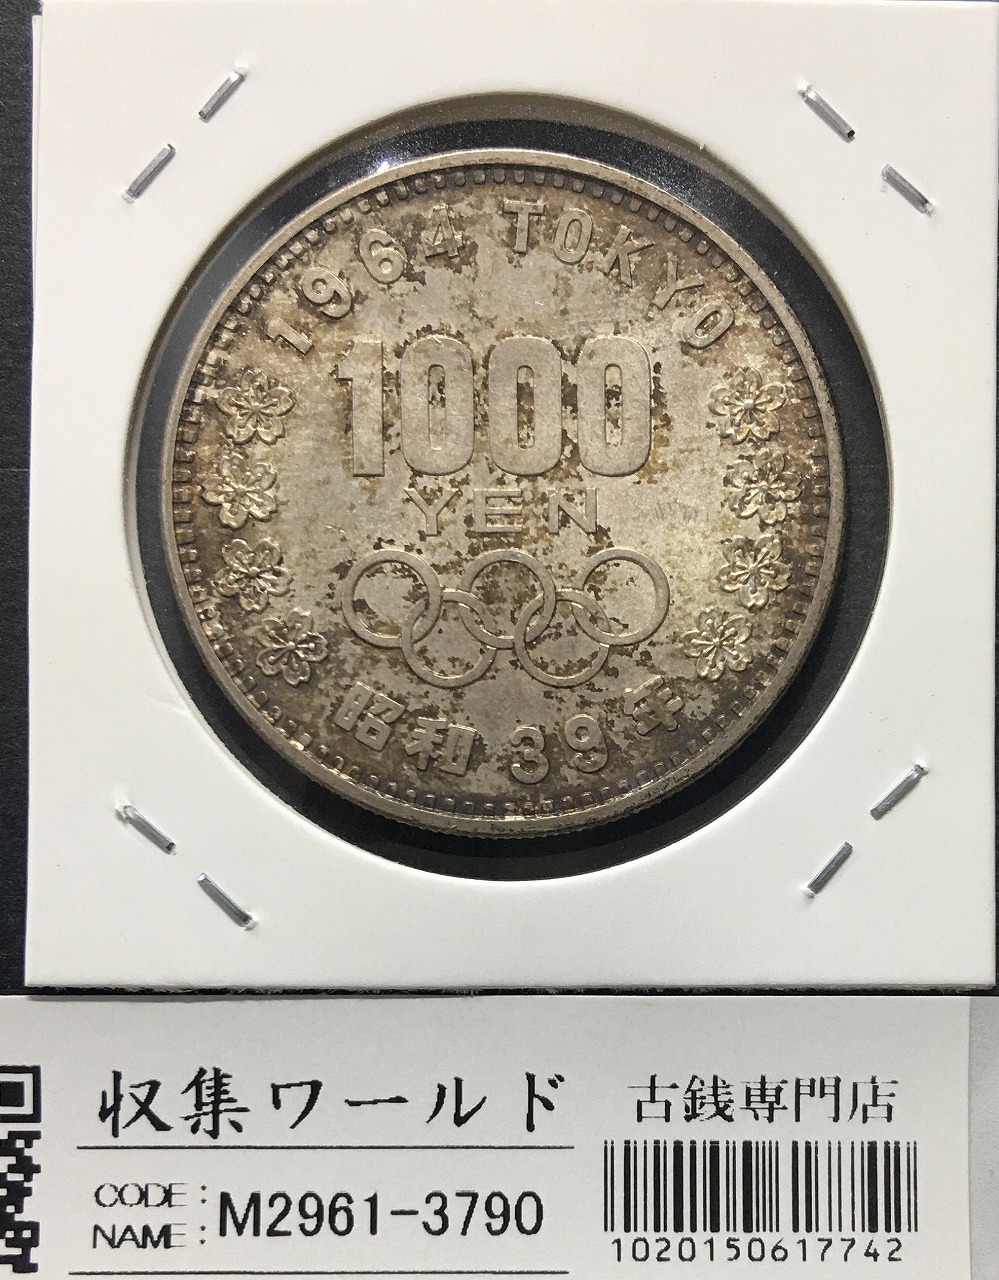 東京オリンピック記念 1000円銀貨 1964年(S39年銘) 極美-3790